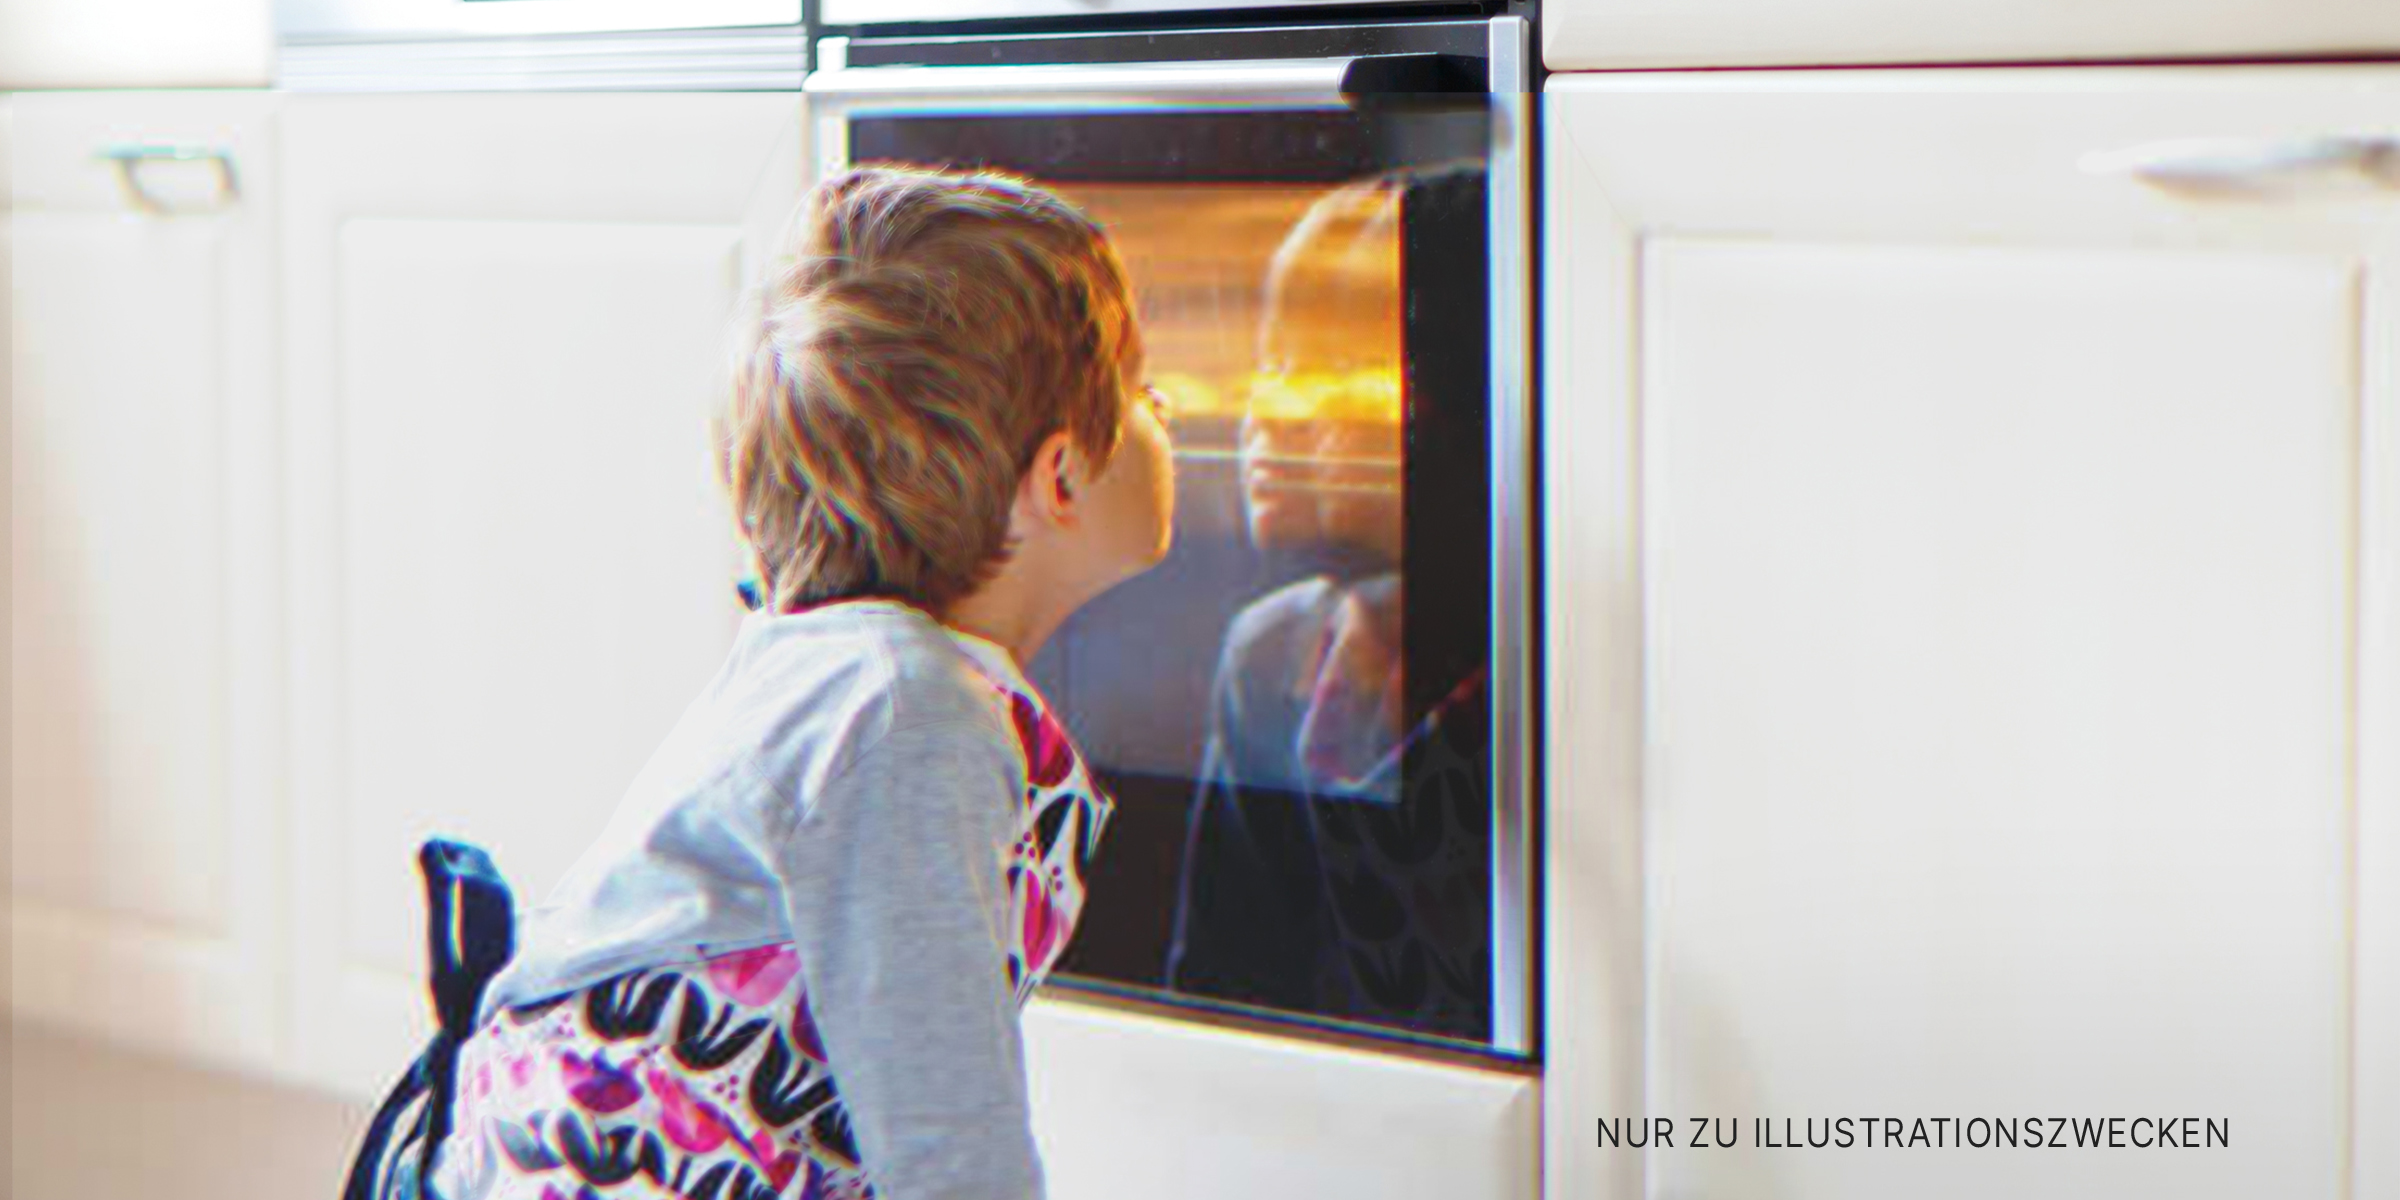 Junge, der einen Ofen betrachtet | Quelle: Shutterstock